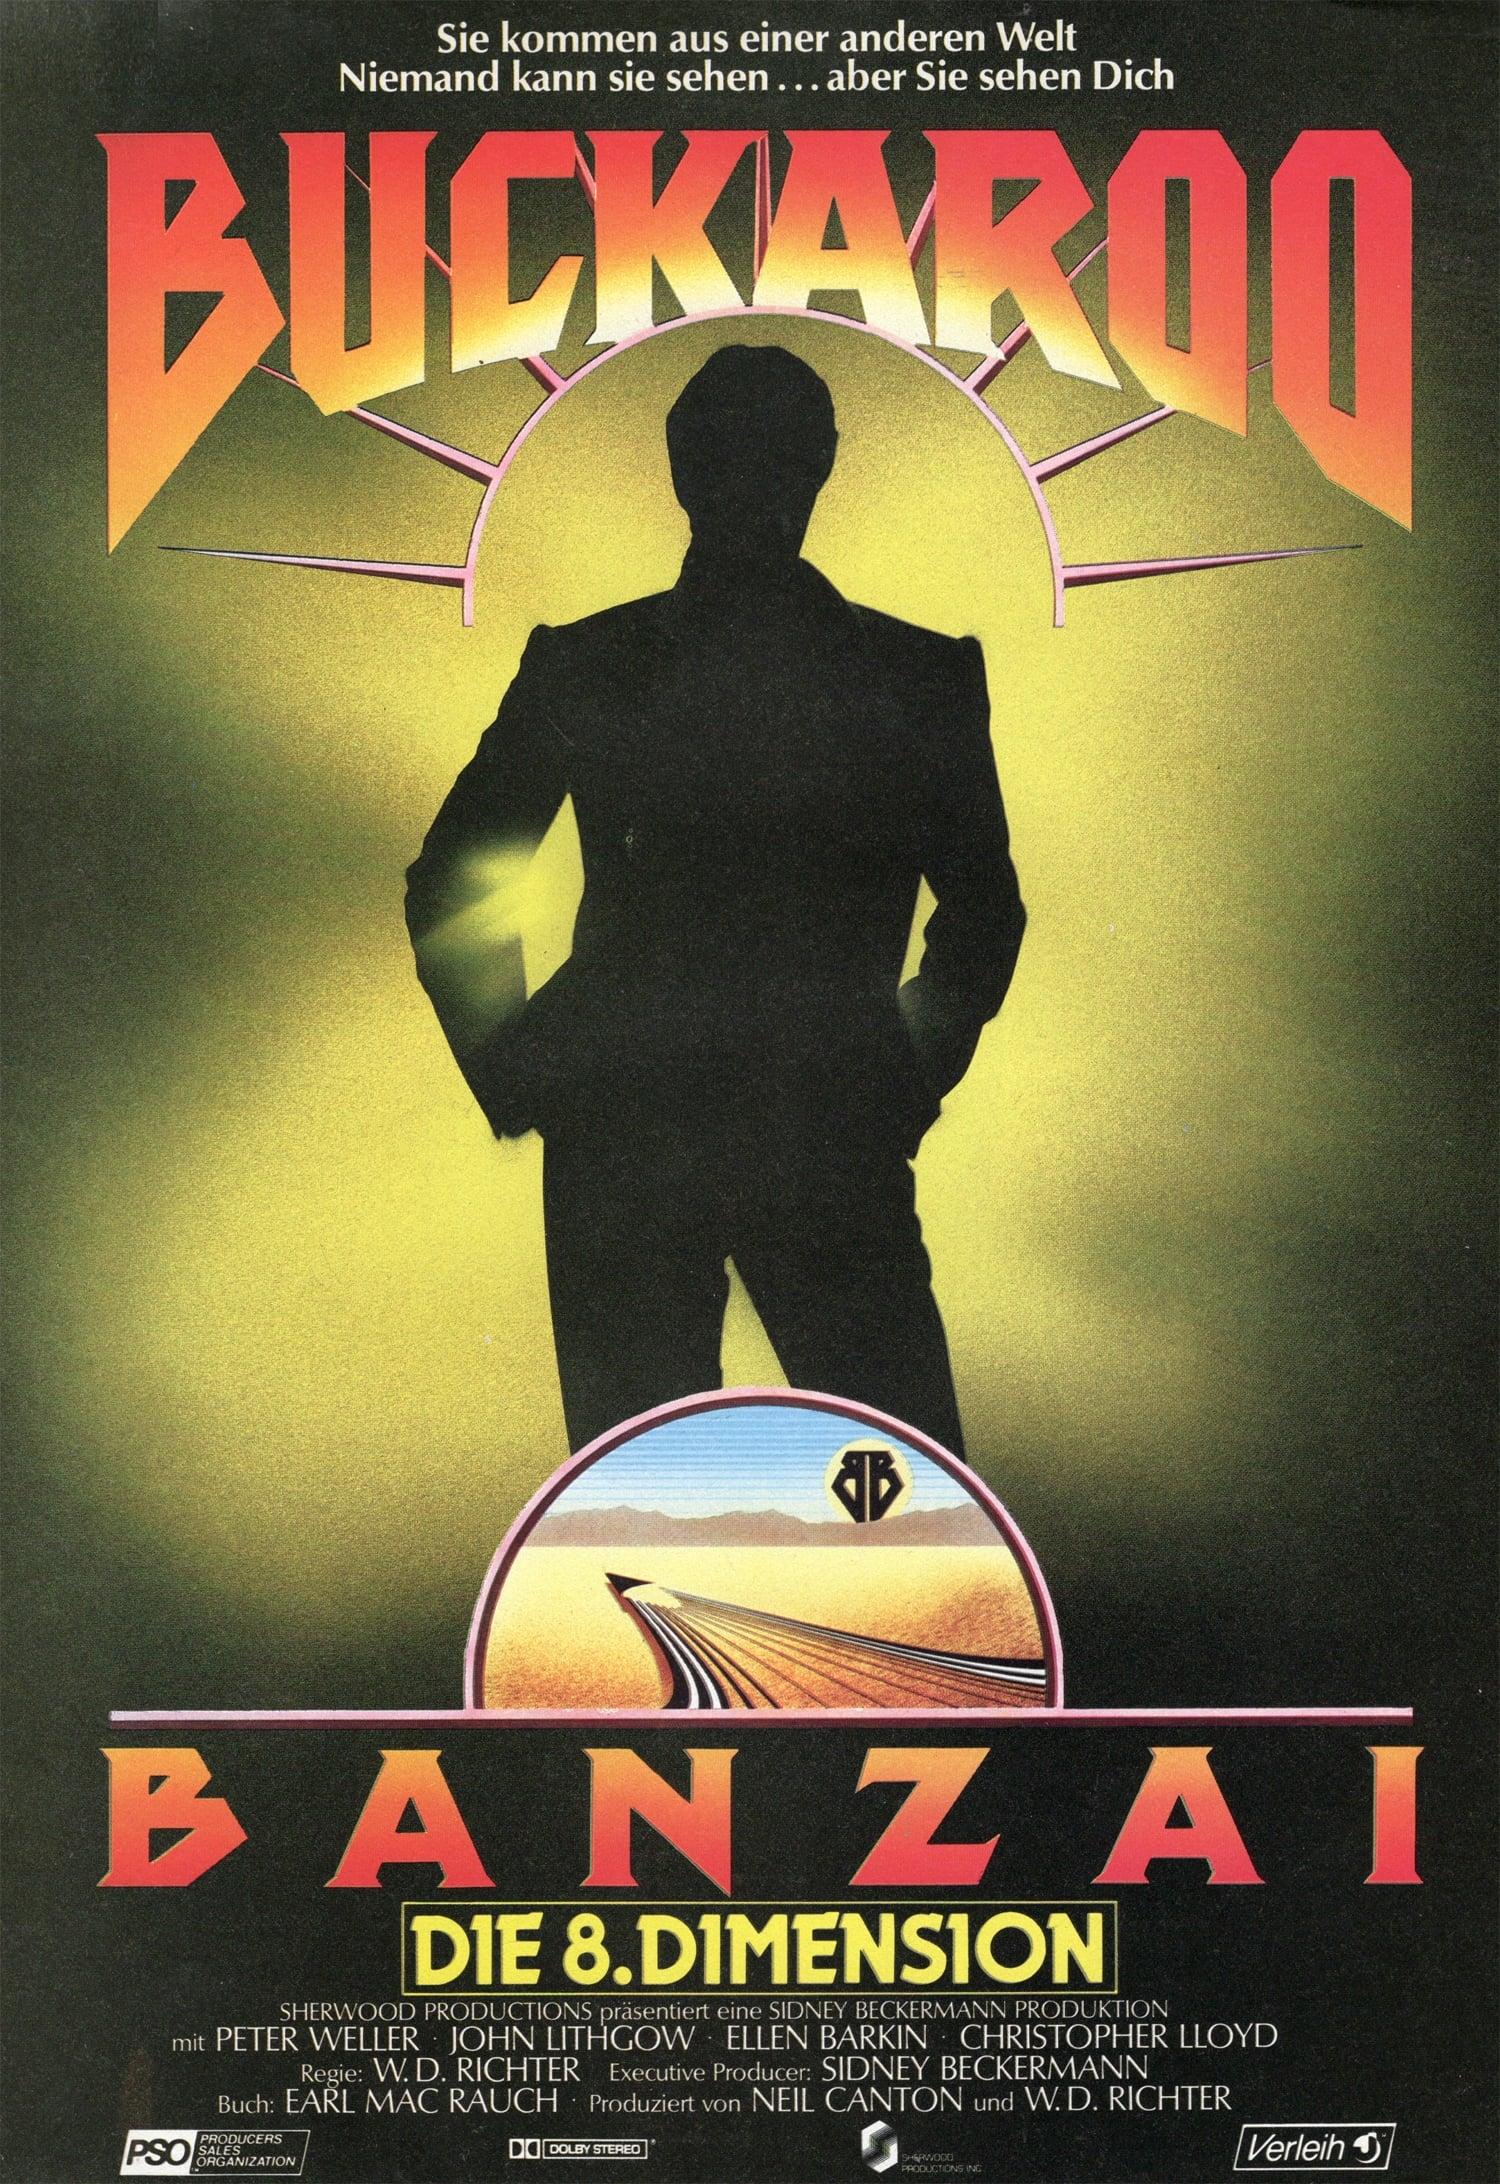 Buckaroo Banzai - Die 8. Dimension poster